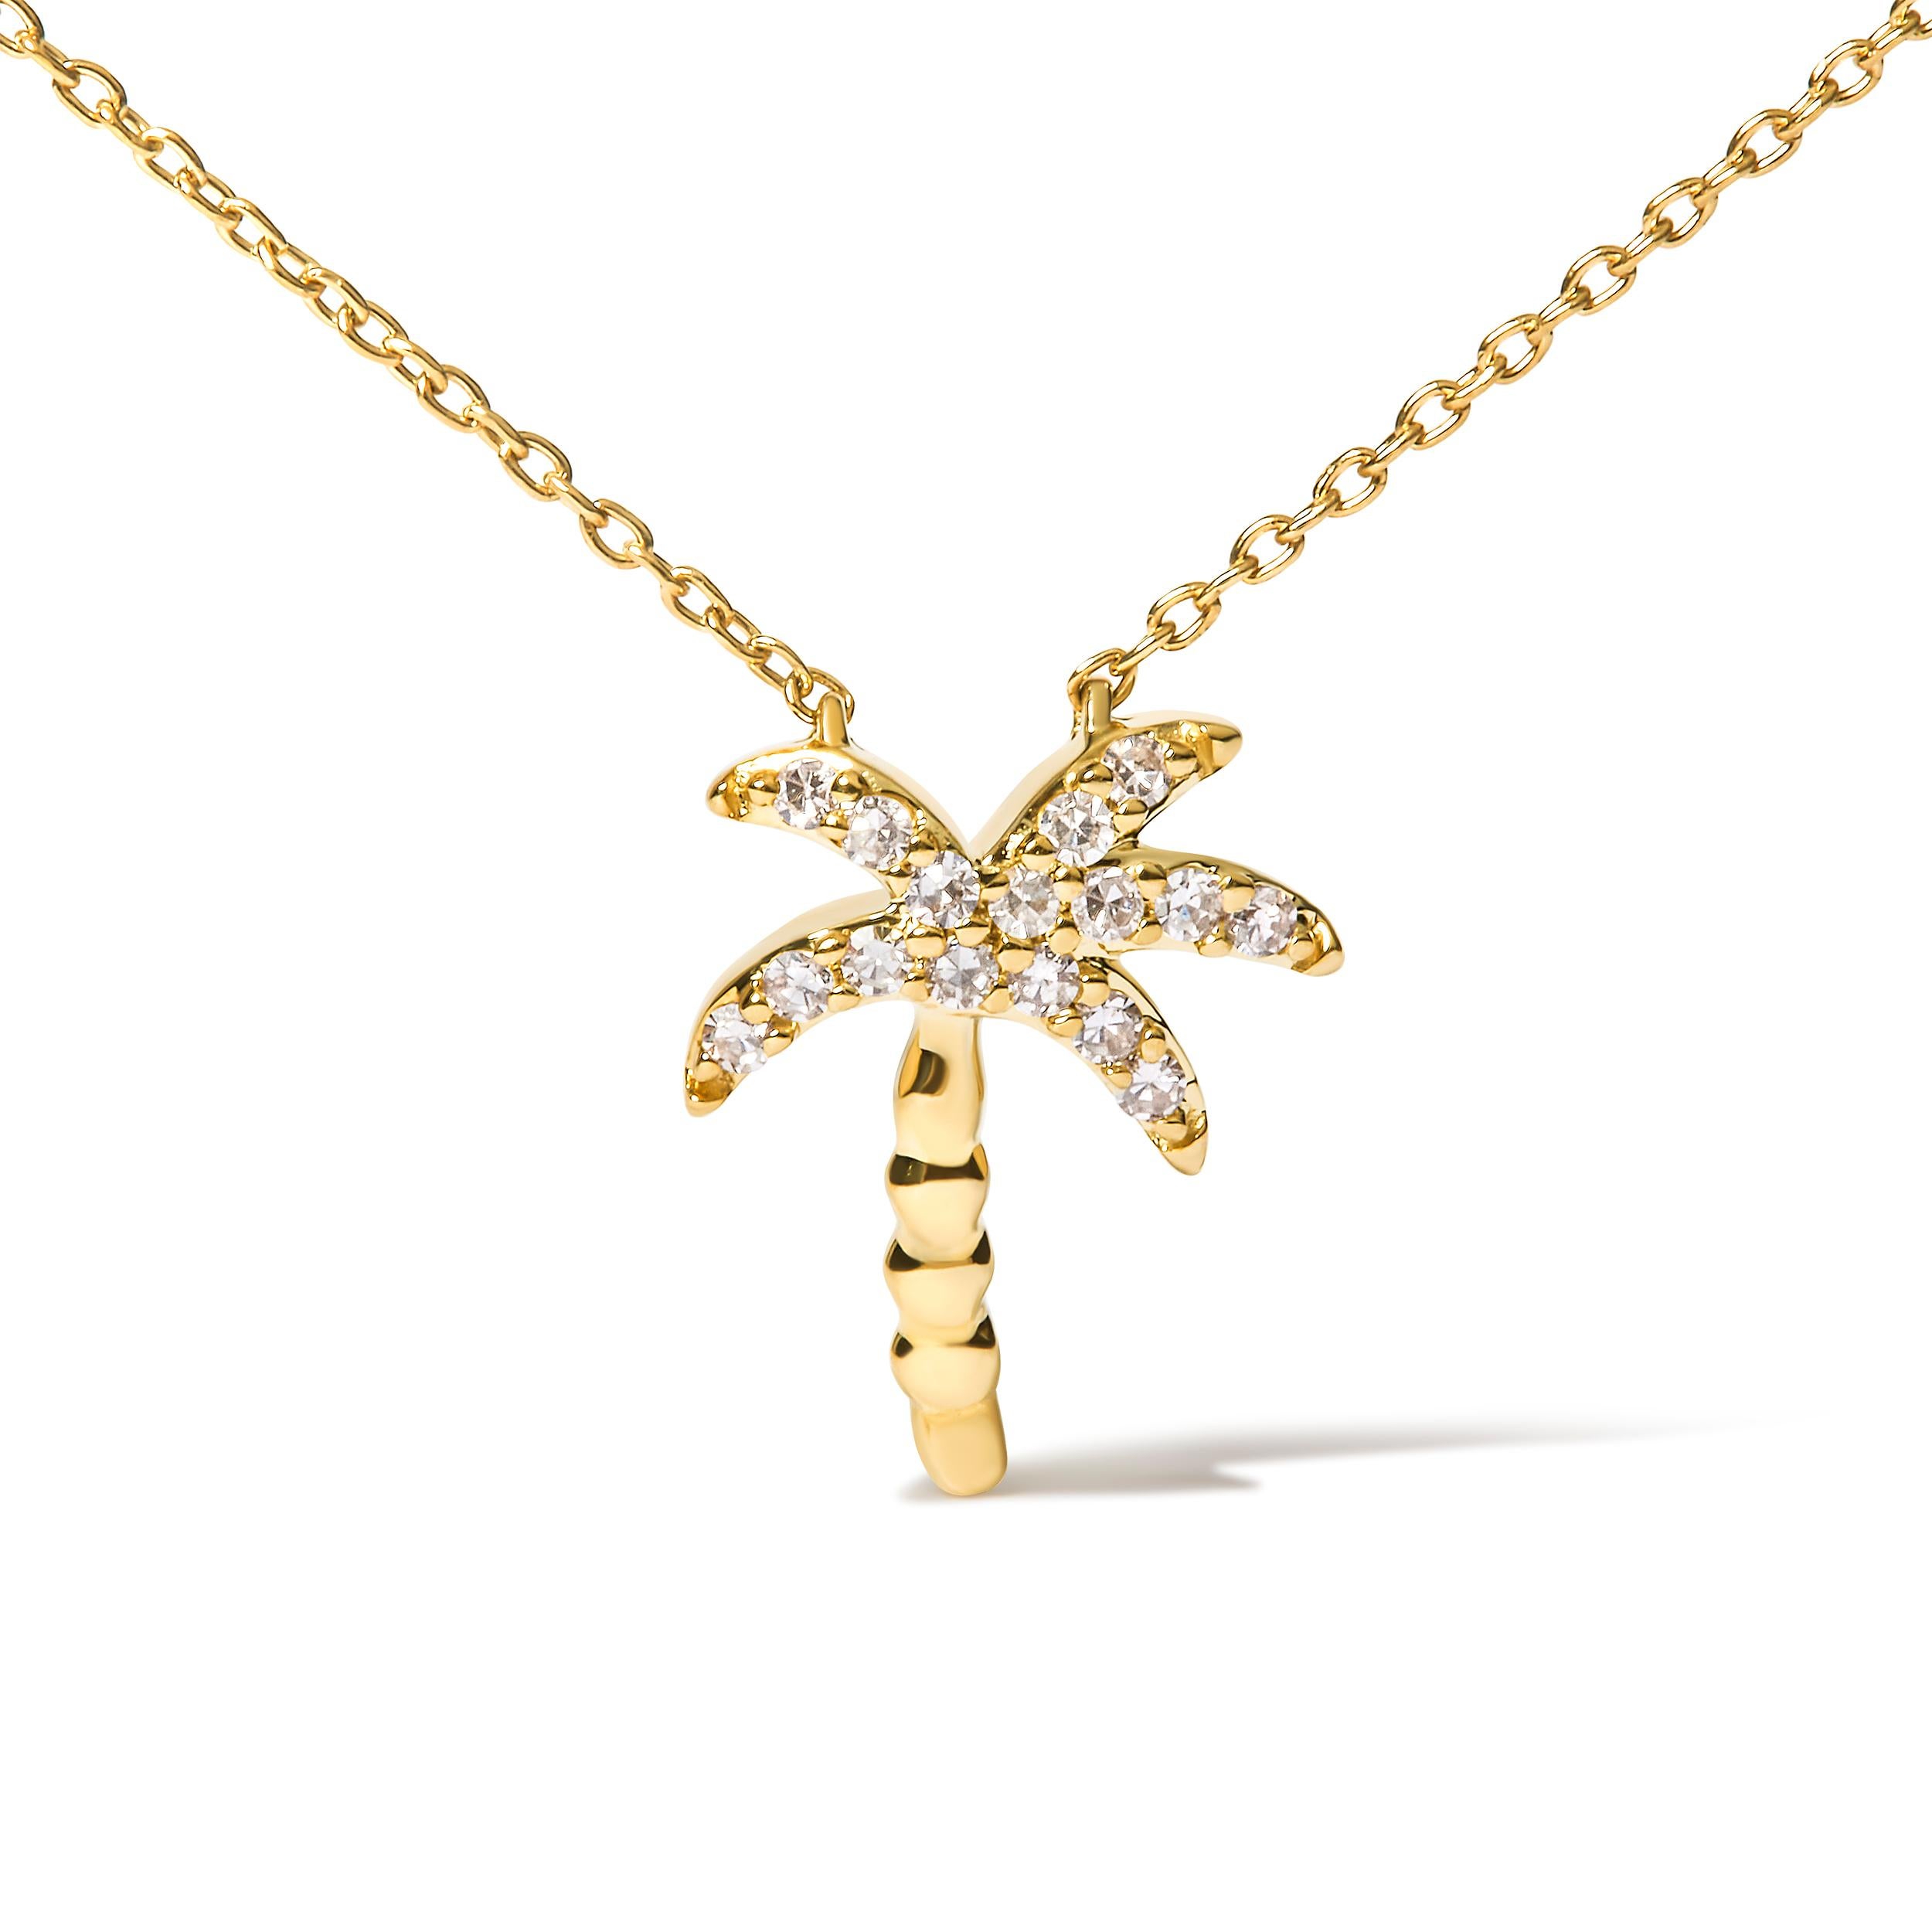 Voici une pièce éblouissante qui incarne l'essence même de la beauté de la nature : un collier à pendentif palmier de 18 pouces. Fabriqué avec la plus grande précision en or jaune 10 carats, ce superbe collier est orné de 16 diamants ronds exquis,